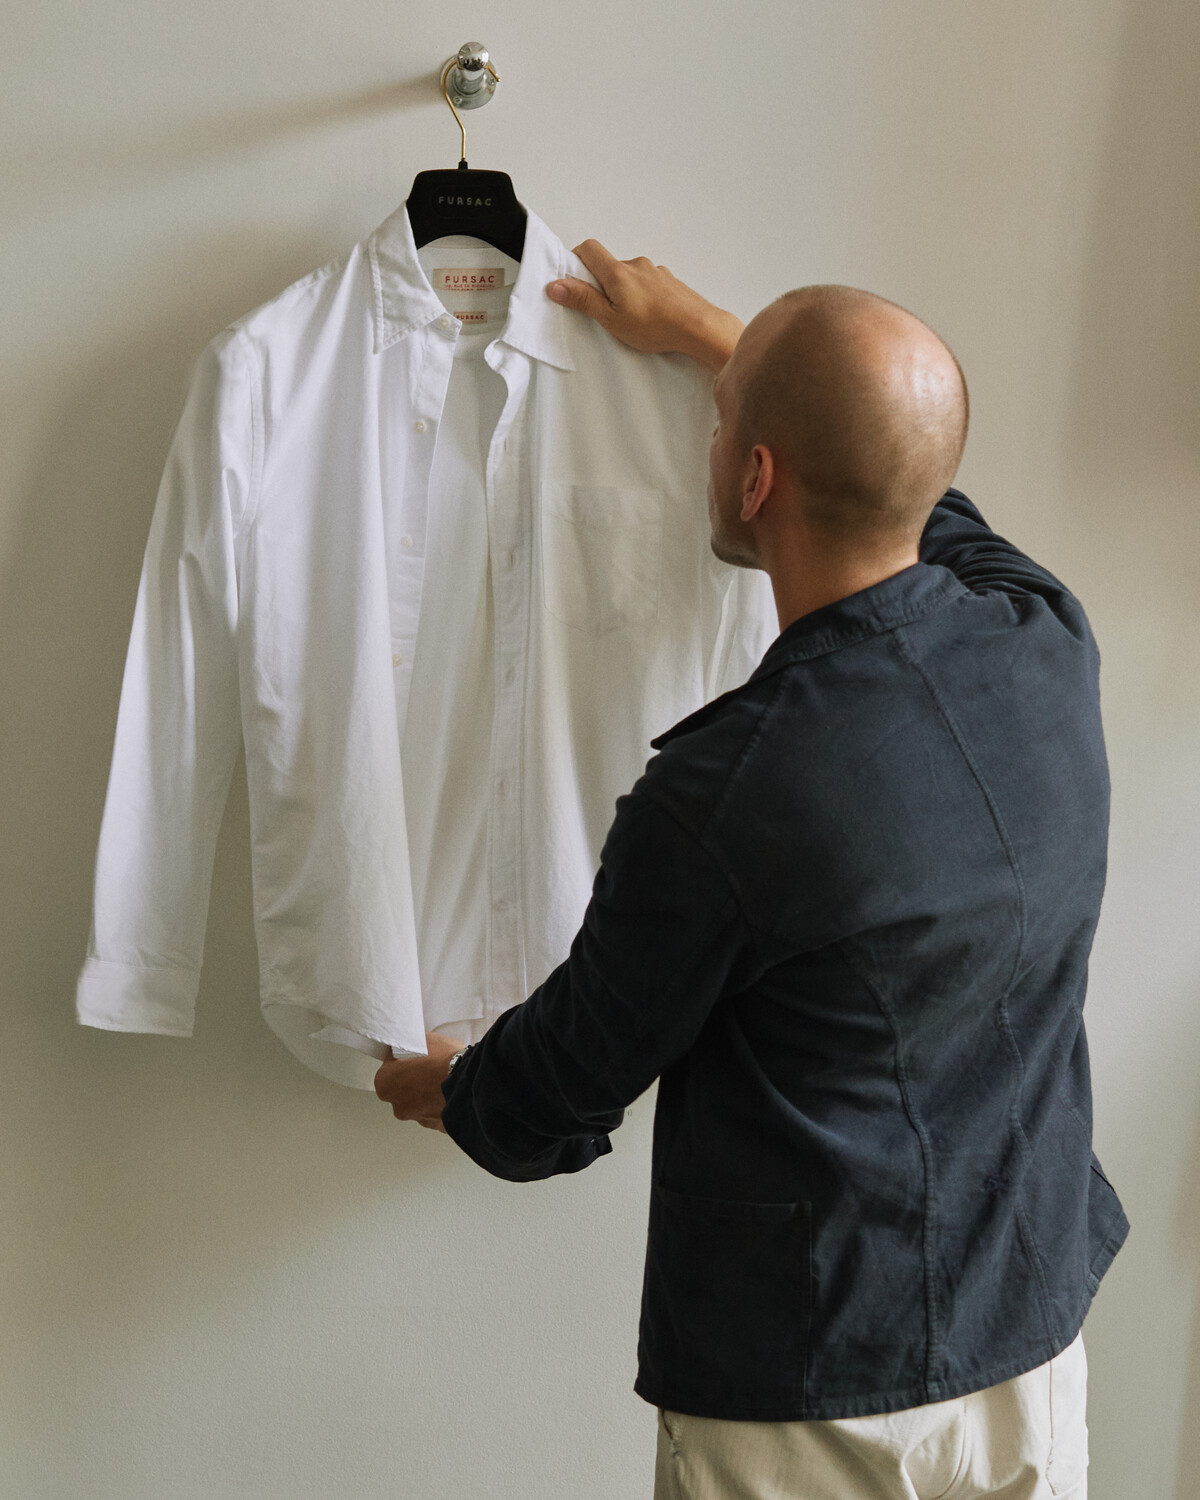 Inside the Essentials of Gauthier Borsarello - Mens suits and clothes De Fursac